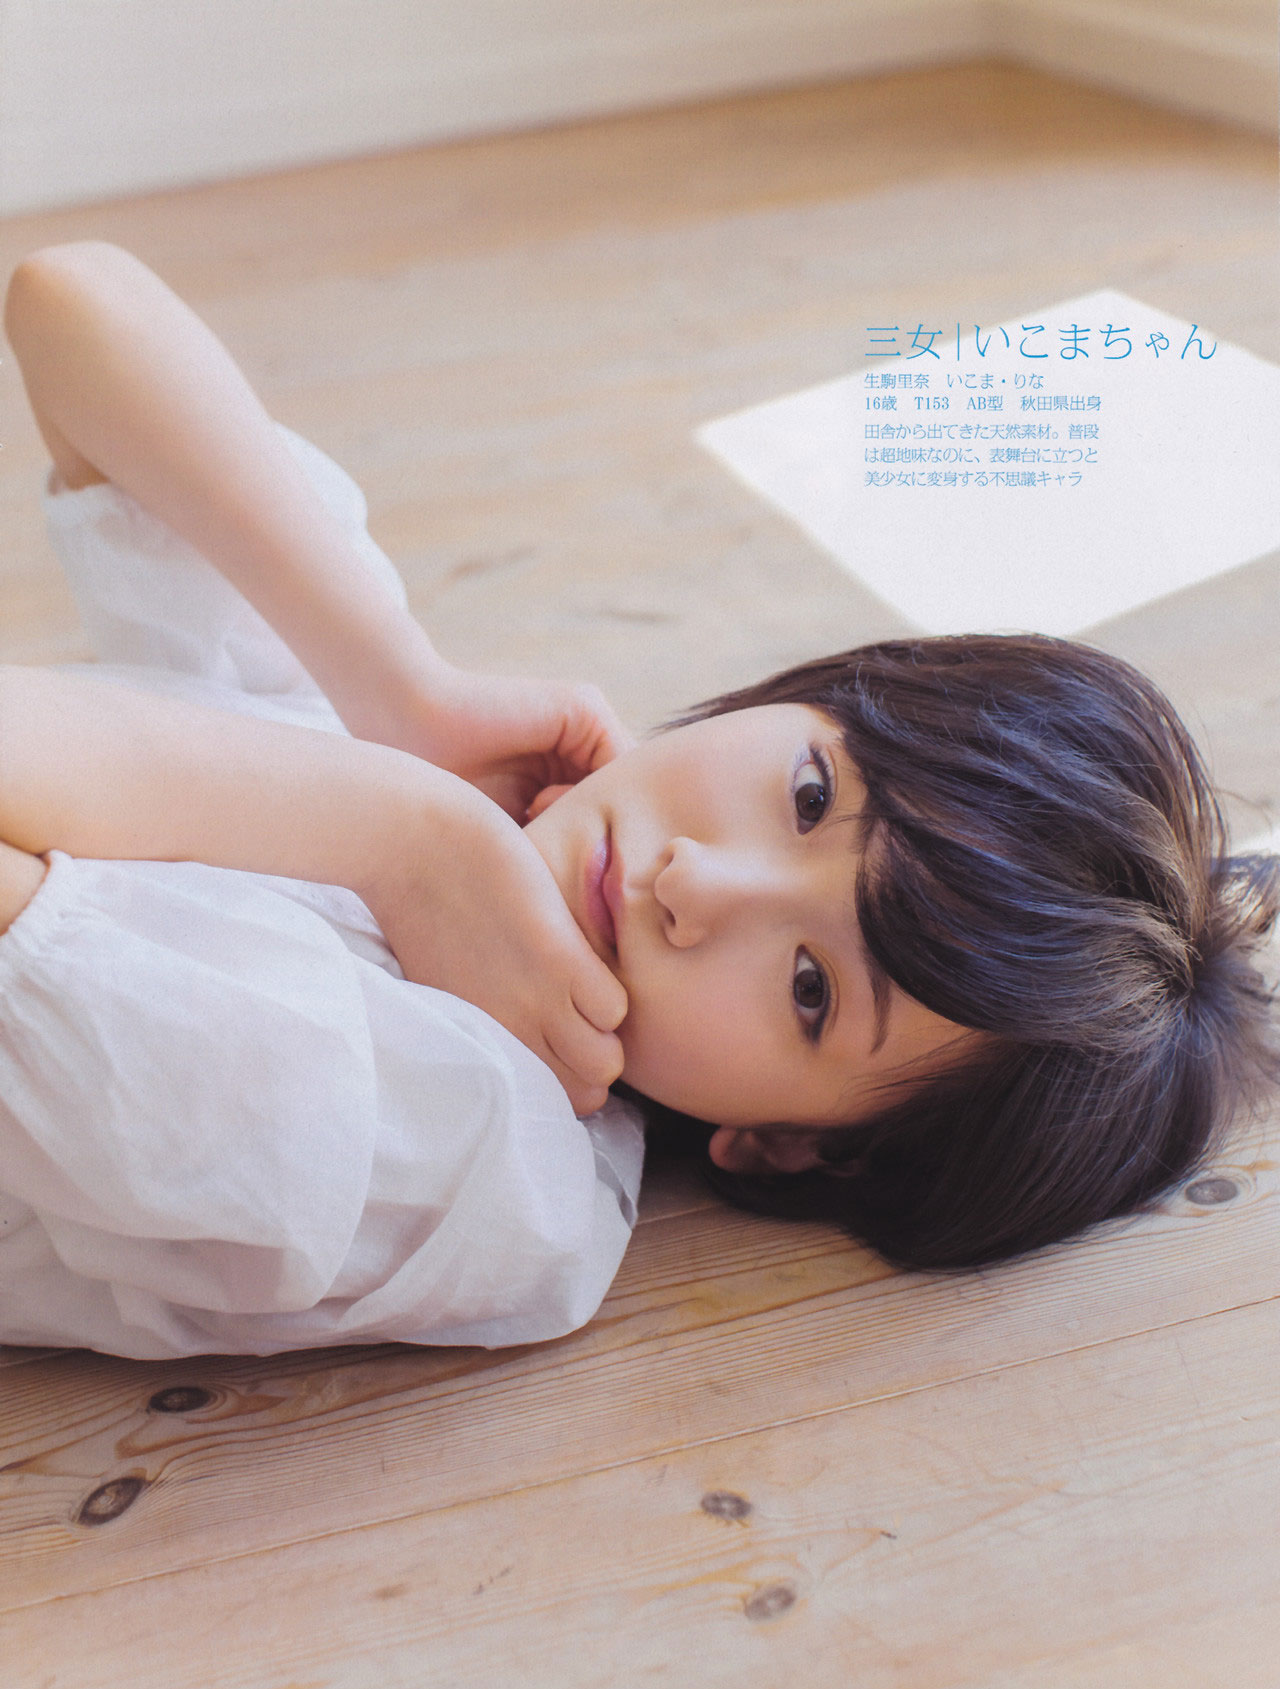 Nogizaka46 Rina Ikoma Friday Magazine